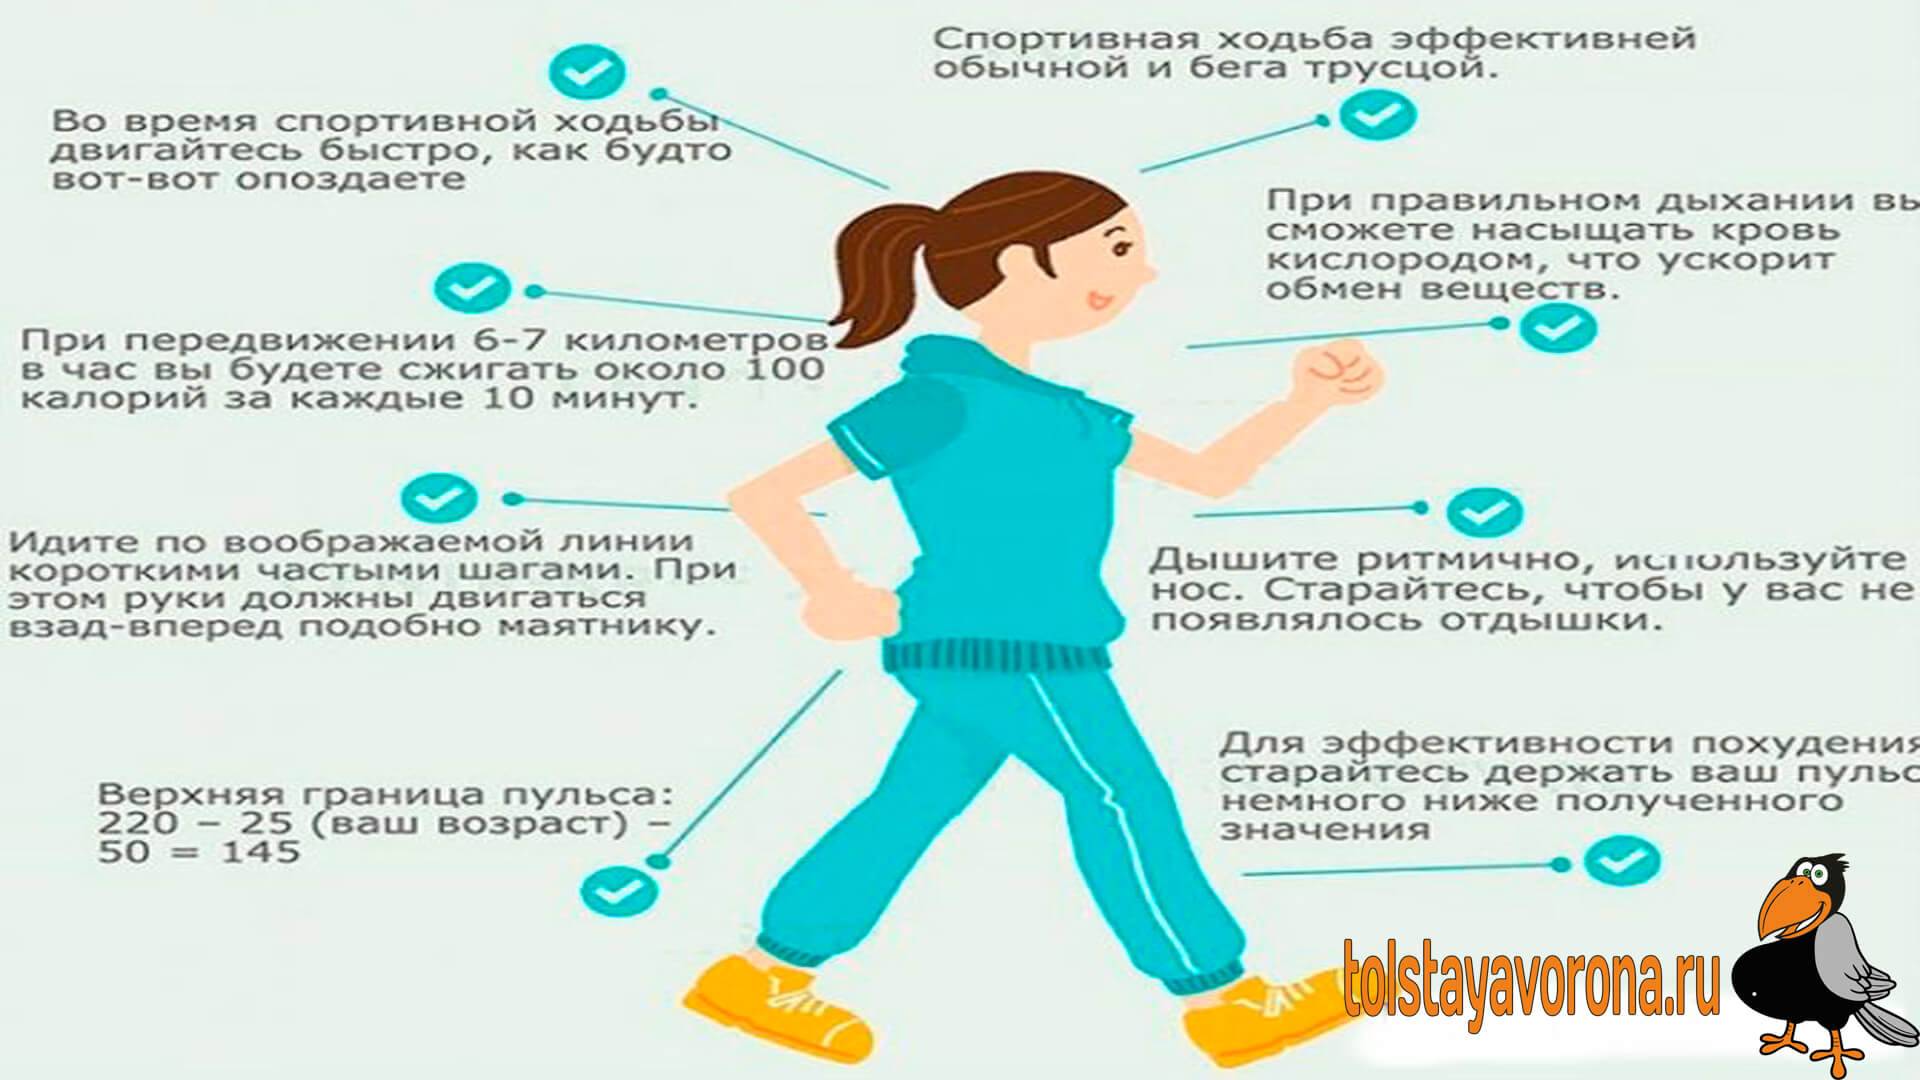 Ходьба полезнее бега. Влияние ходьбы. Пешие прогулки полезны для здоровья. Ходьба полезна для здоровья. Влияние ходьбы на организм.